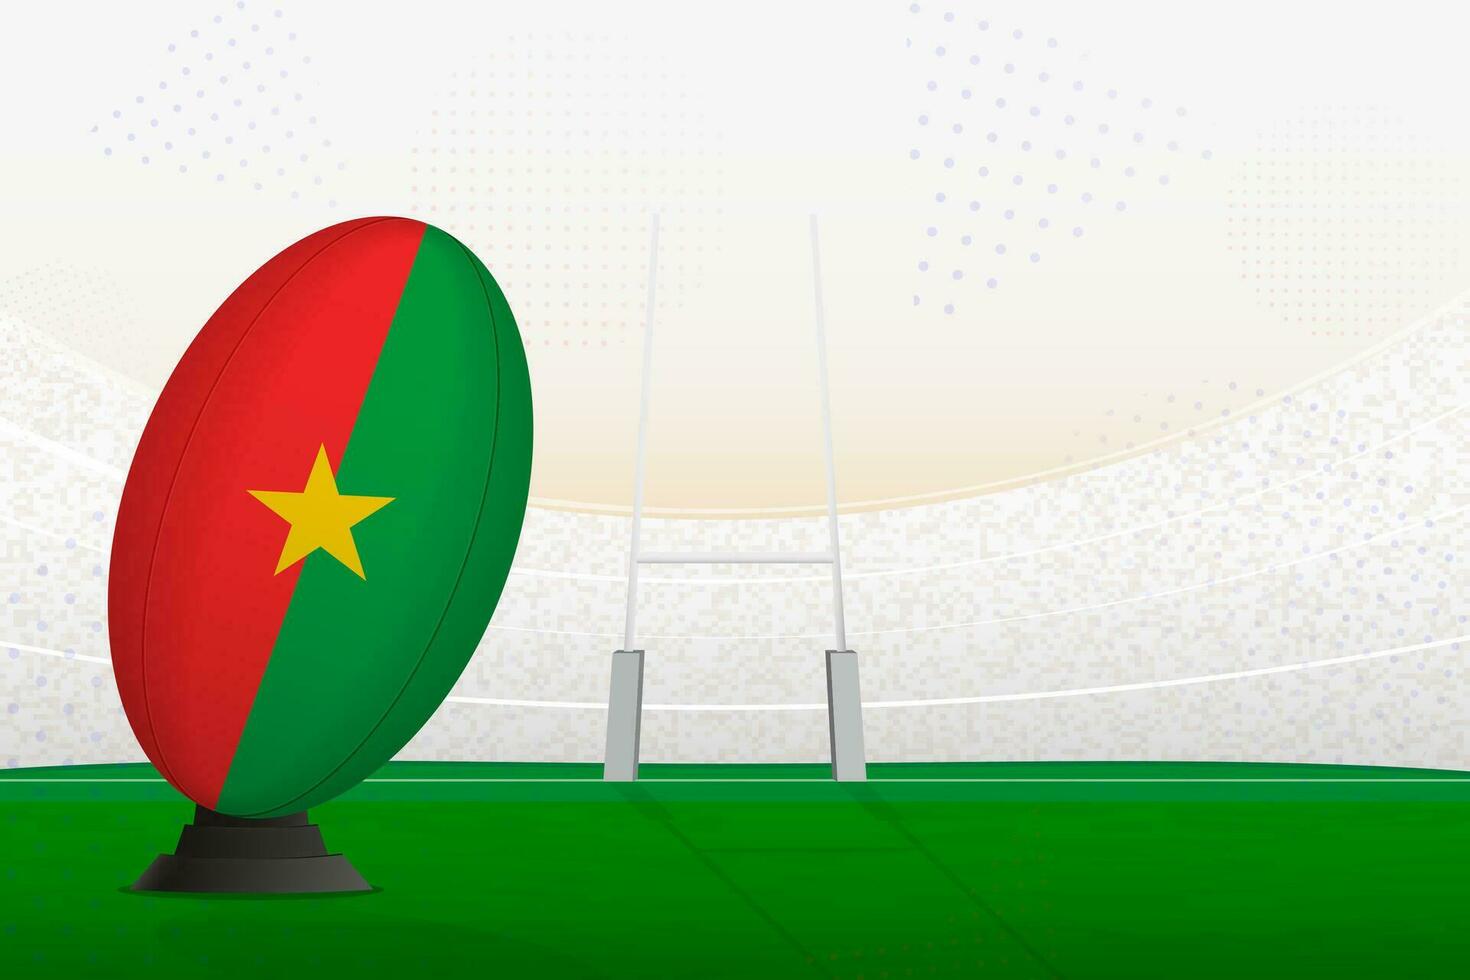 Burkina faso nationaal team rugby bal Aan rugby stadion en doel berichten, voorbereidingen treffen voor een straf of vrij trap. vector